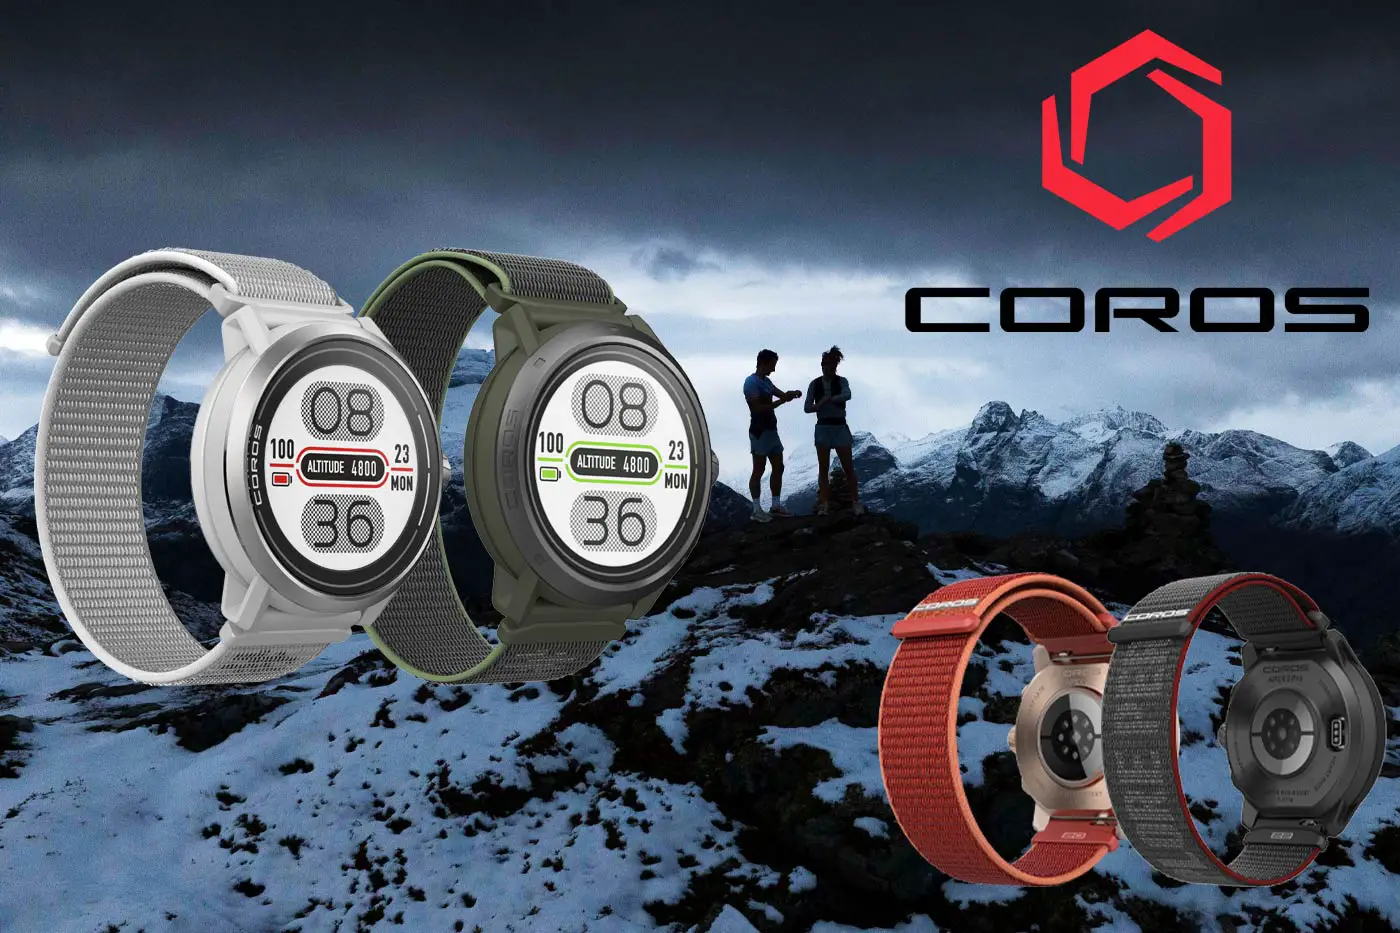 COROS APEX 2 y COROS APEX 2 Pro - Detalles e información de los nuevos  modelos - Correr una Maratón - Review de Garmin, Polar, Suunto, COROS